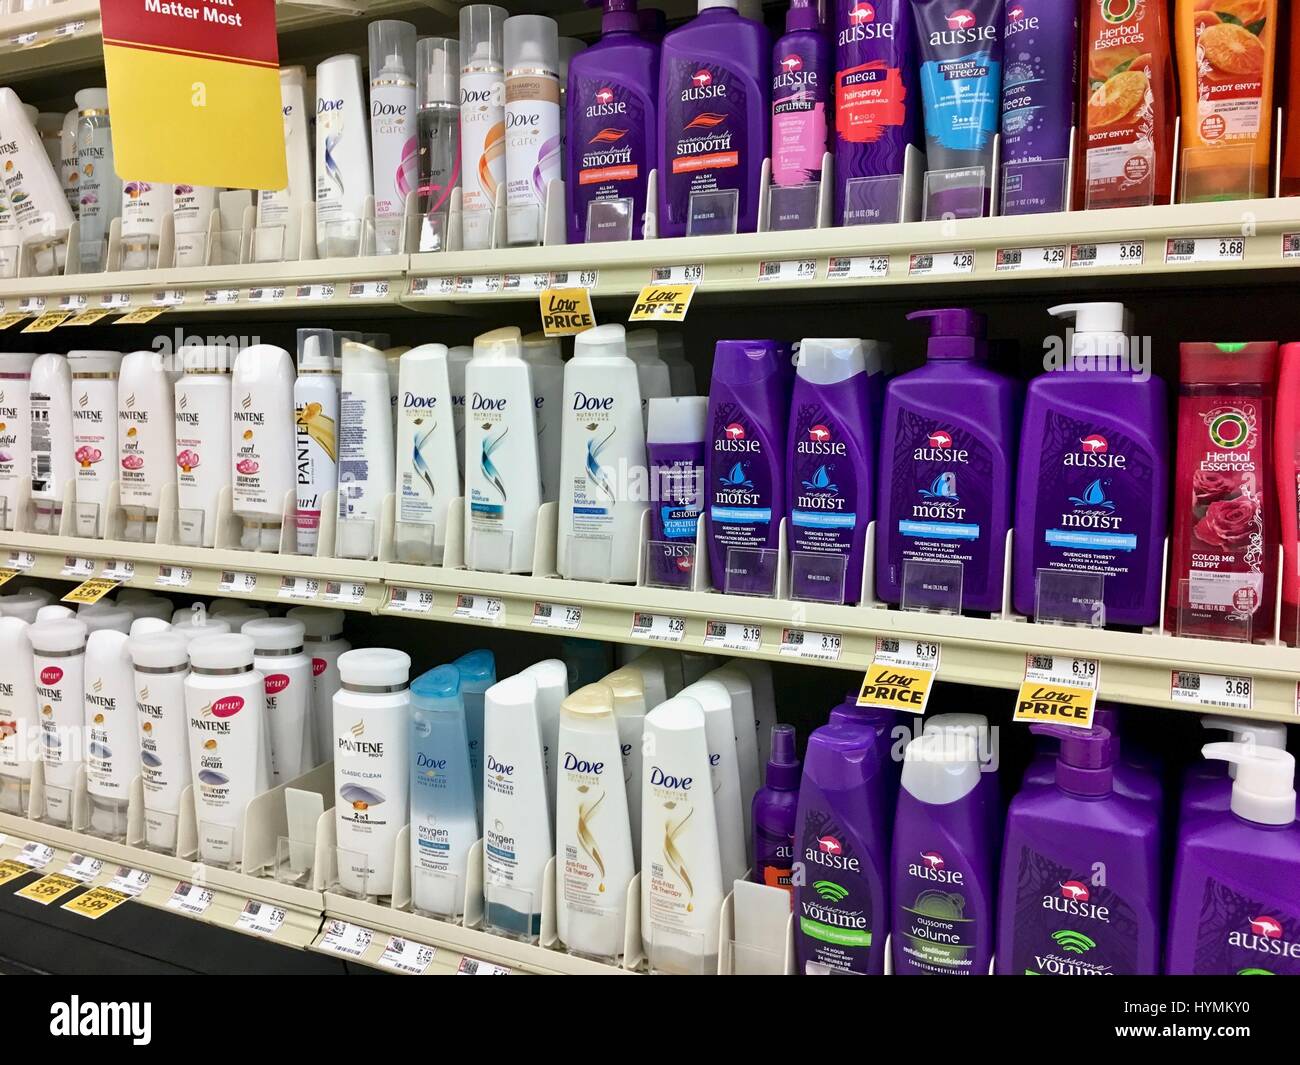 Shampoo und Duschgel auf Regal Stockfotografie - Alamy